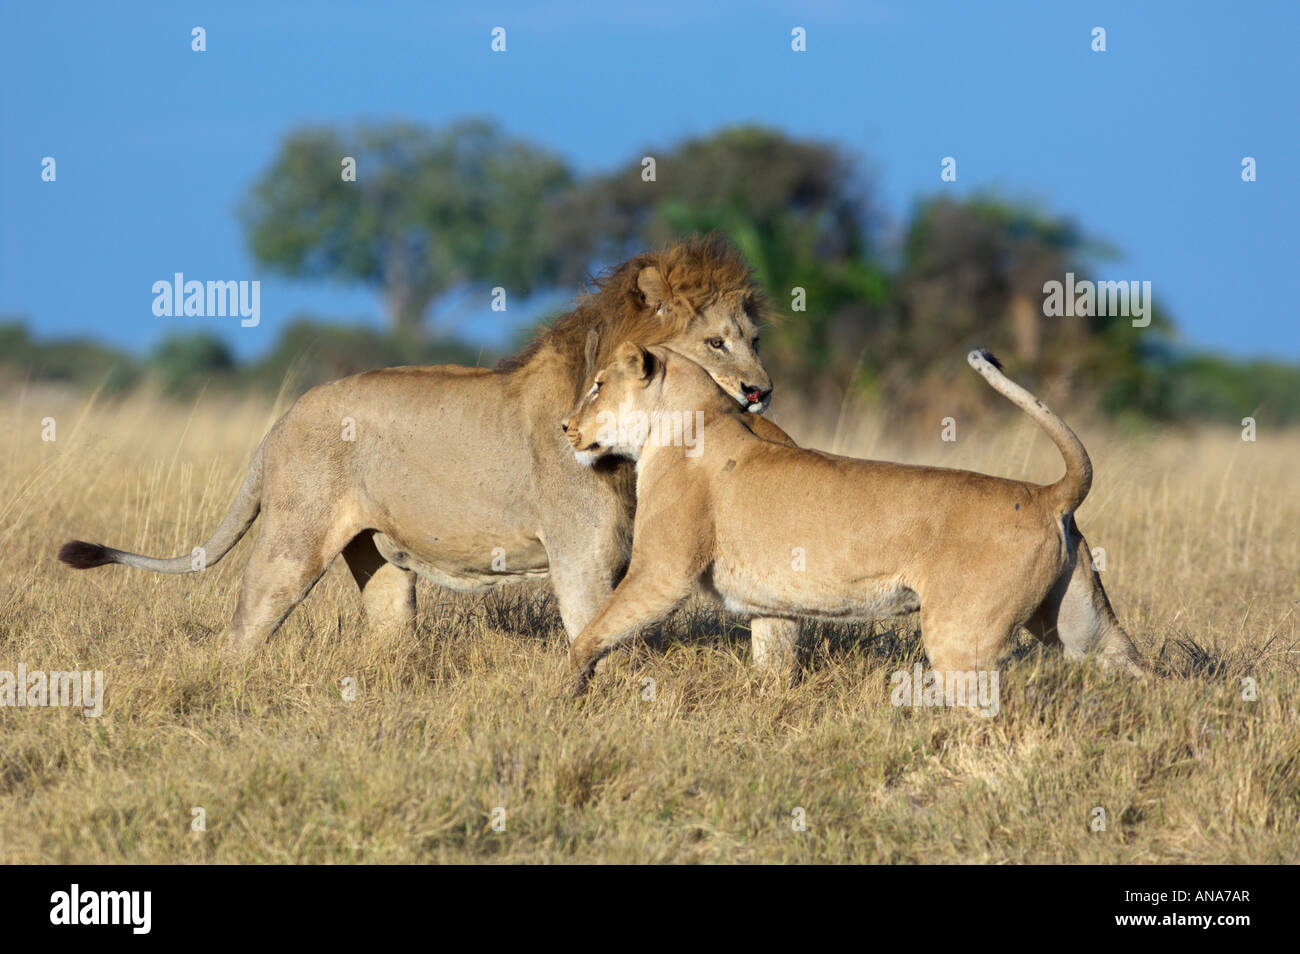 Une femme lion se frotter contre un homme dominant dans un rituel de socialisation quand les lions répondent avec d'autres membres de la fierté Banque D'Images